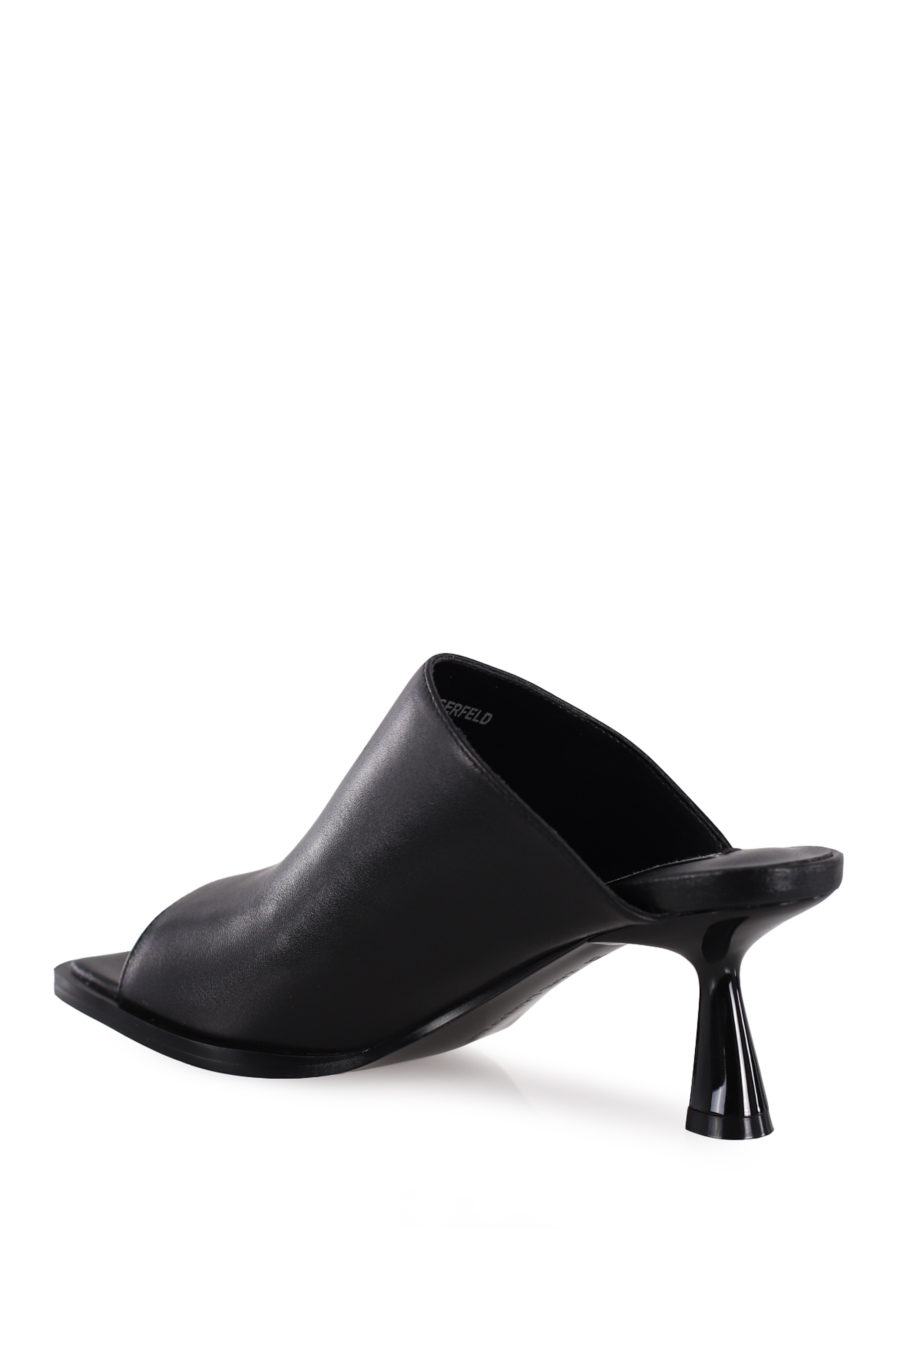 Black mule sandals with heel - IMG 8675